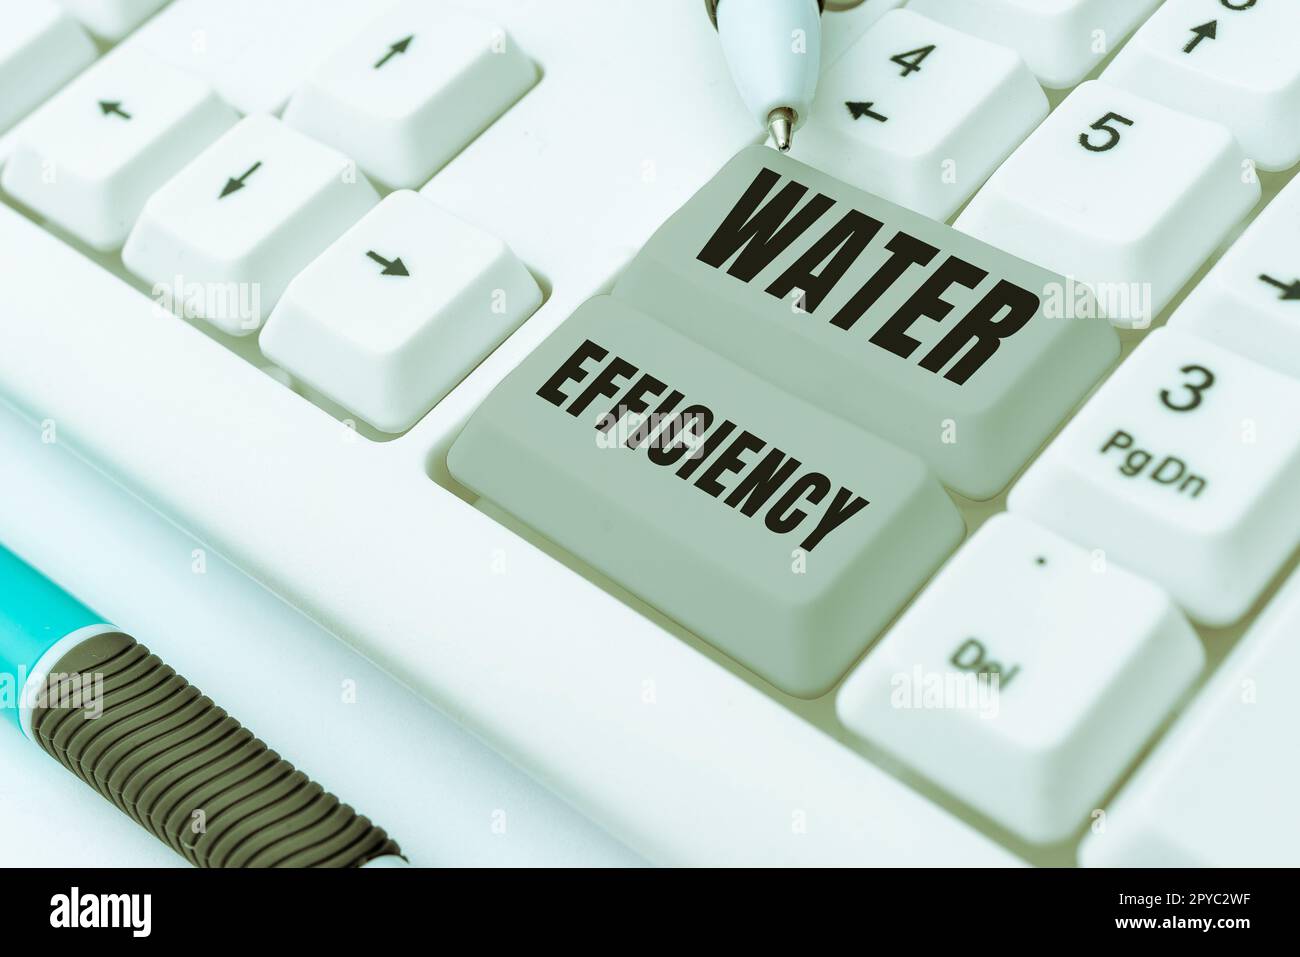 Konzeptionelle Überschrift Wassereffizienz. Ein Wort auf reduziert Wasserverschwendung, indem die erforderliche Wassermenge gemessen wird Stockfoto